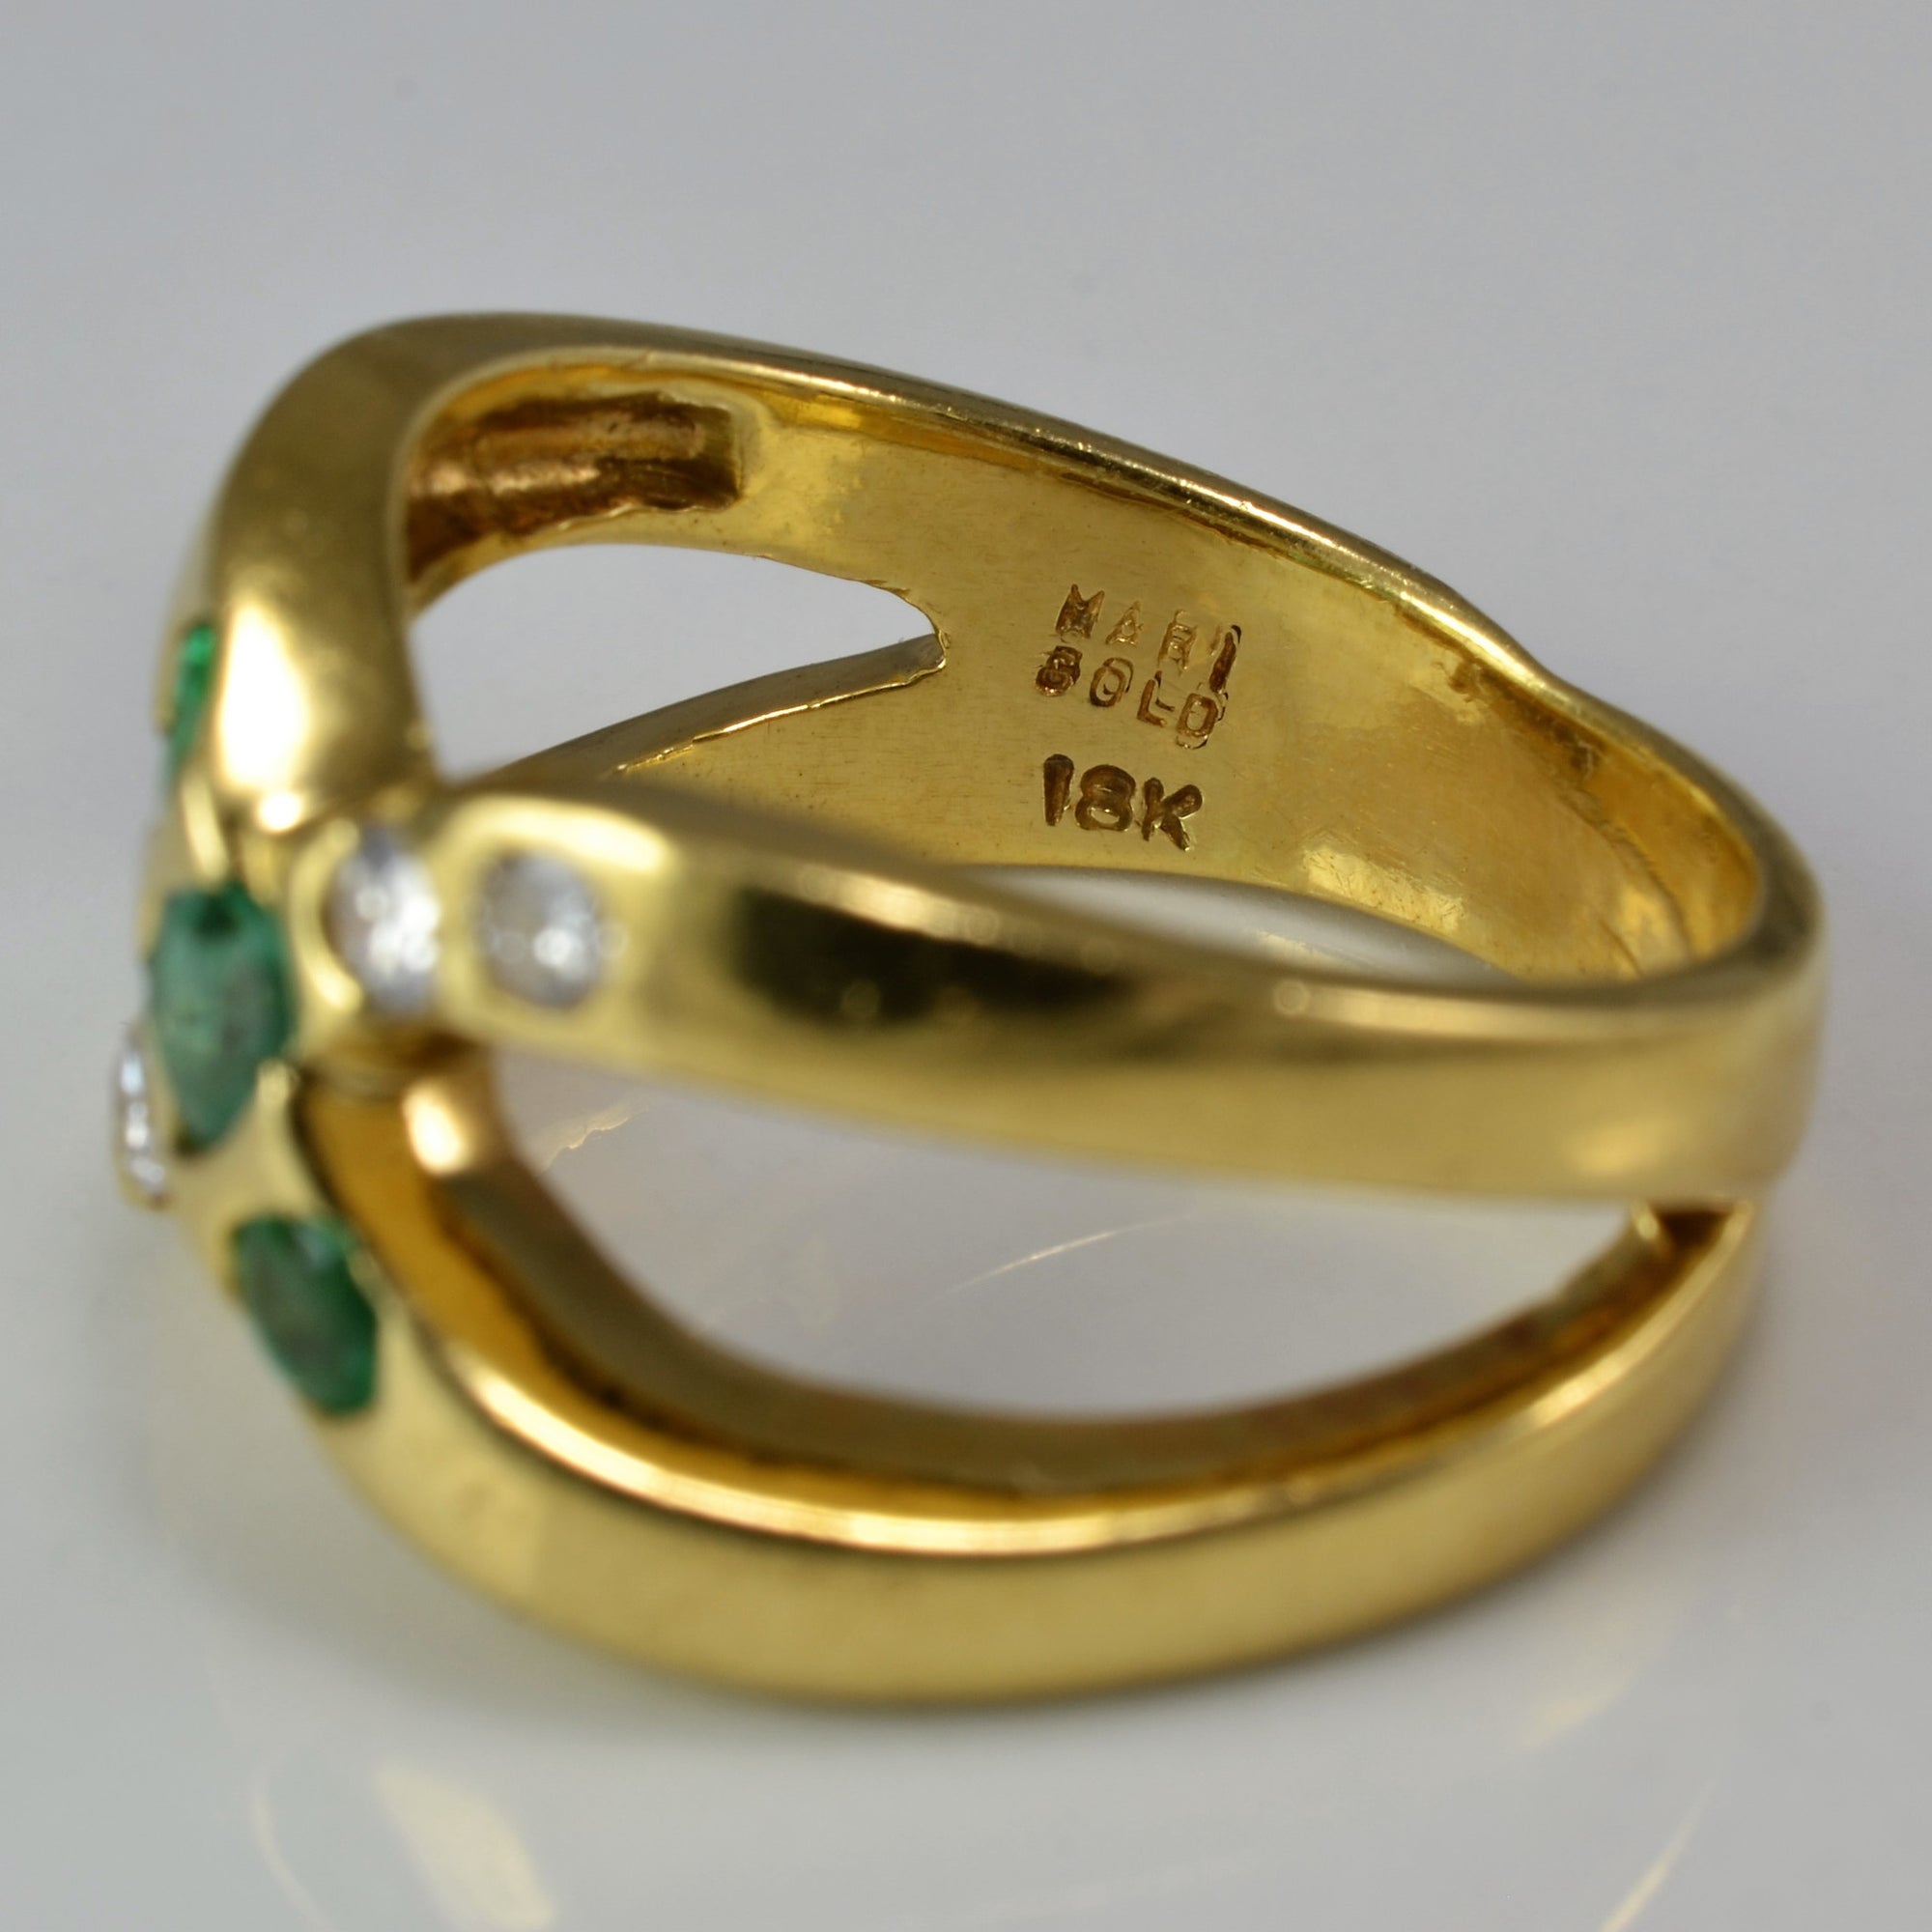 Criss Cross Diamond & Emerald Ring | 0.12 ctw, SZ 5.75 |